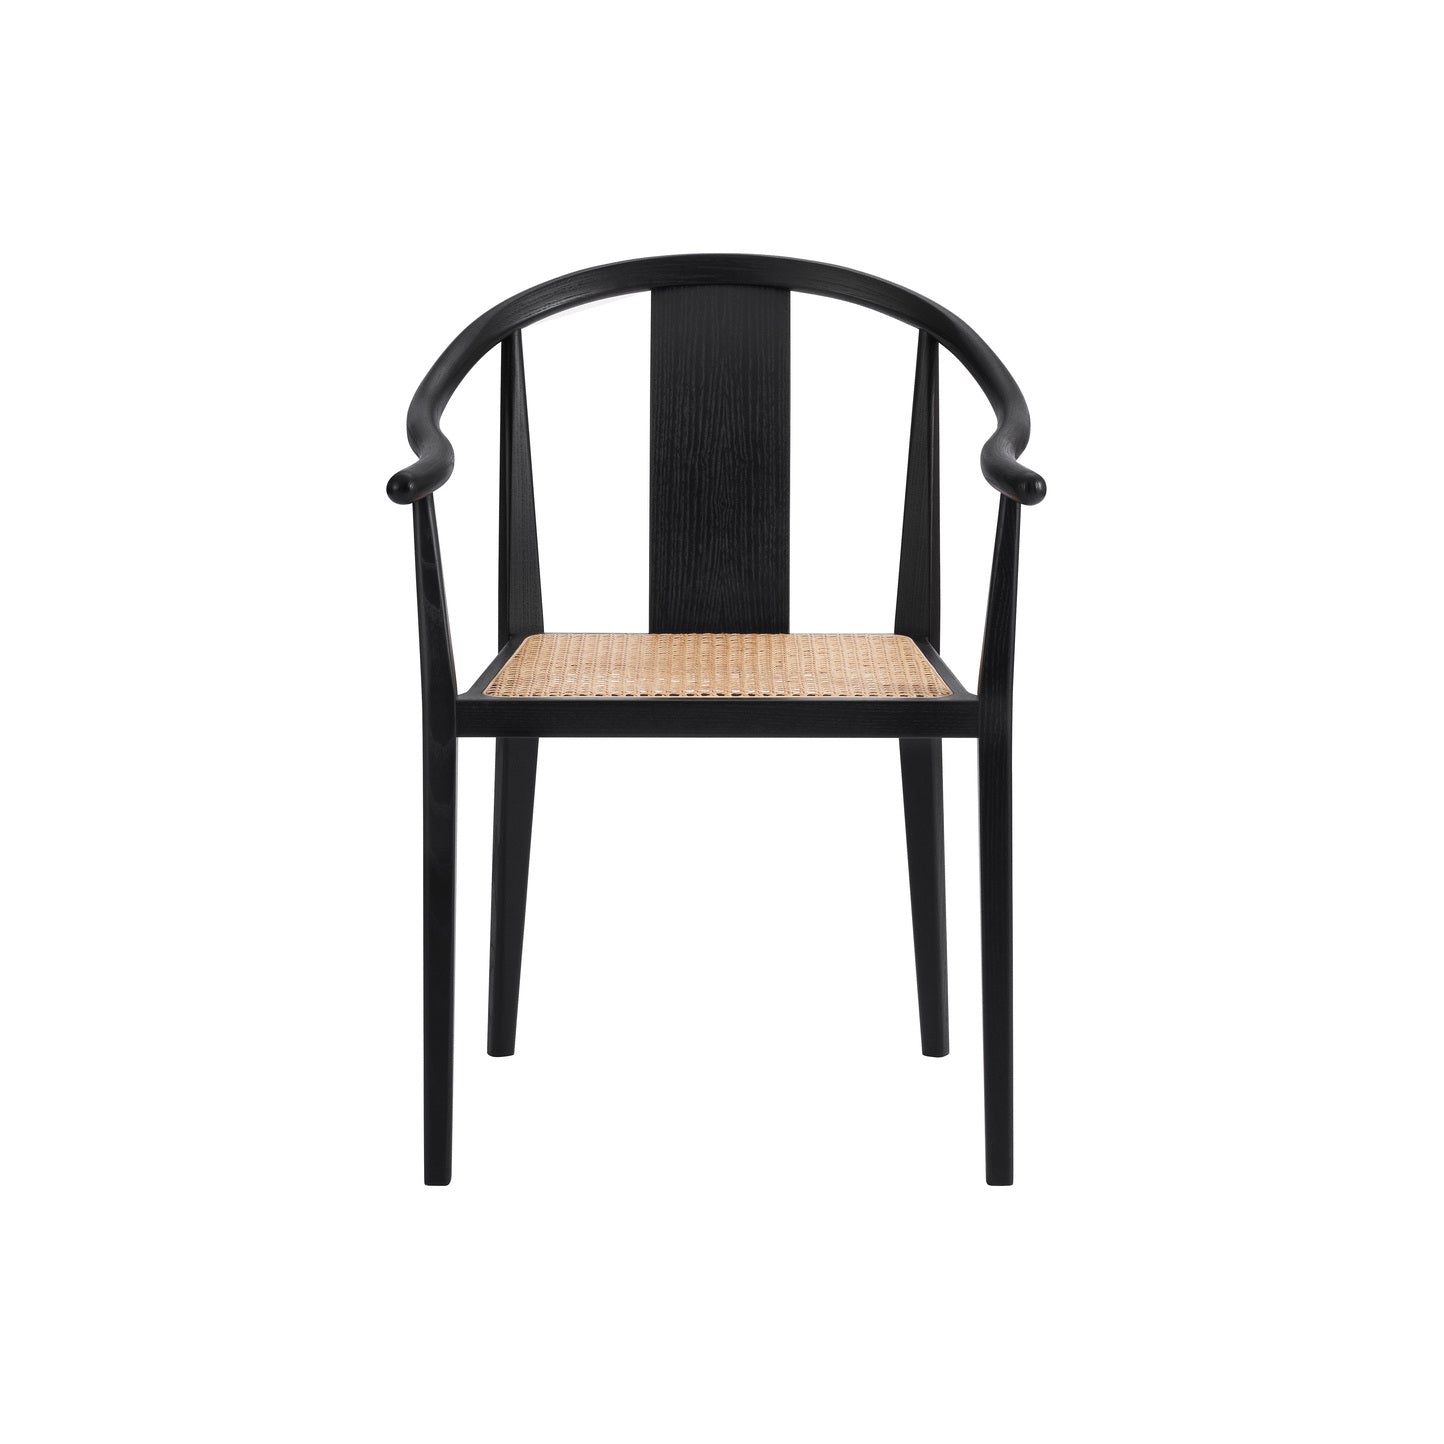 Shanghai Chair | French Rattan NORR11